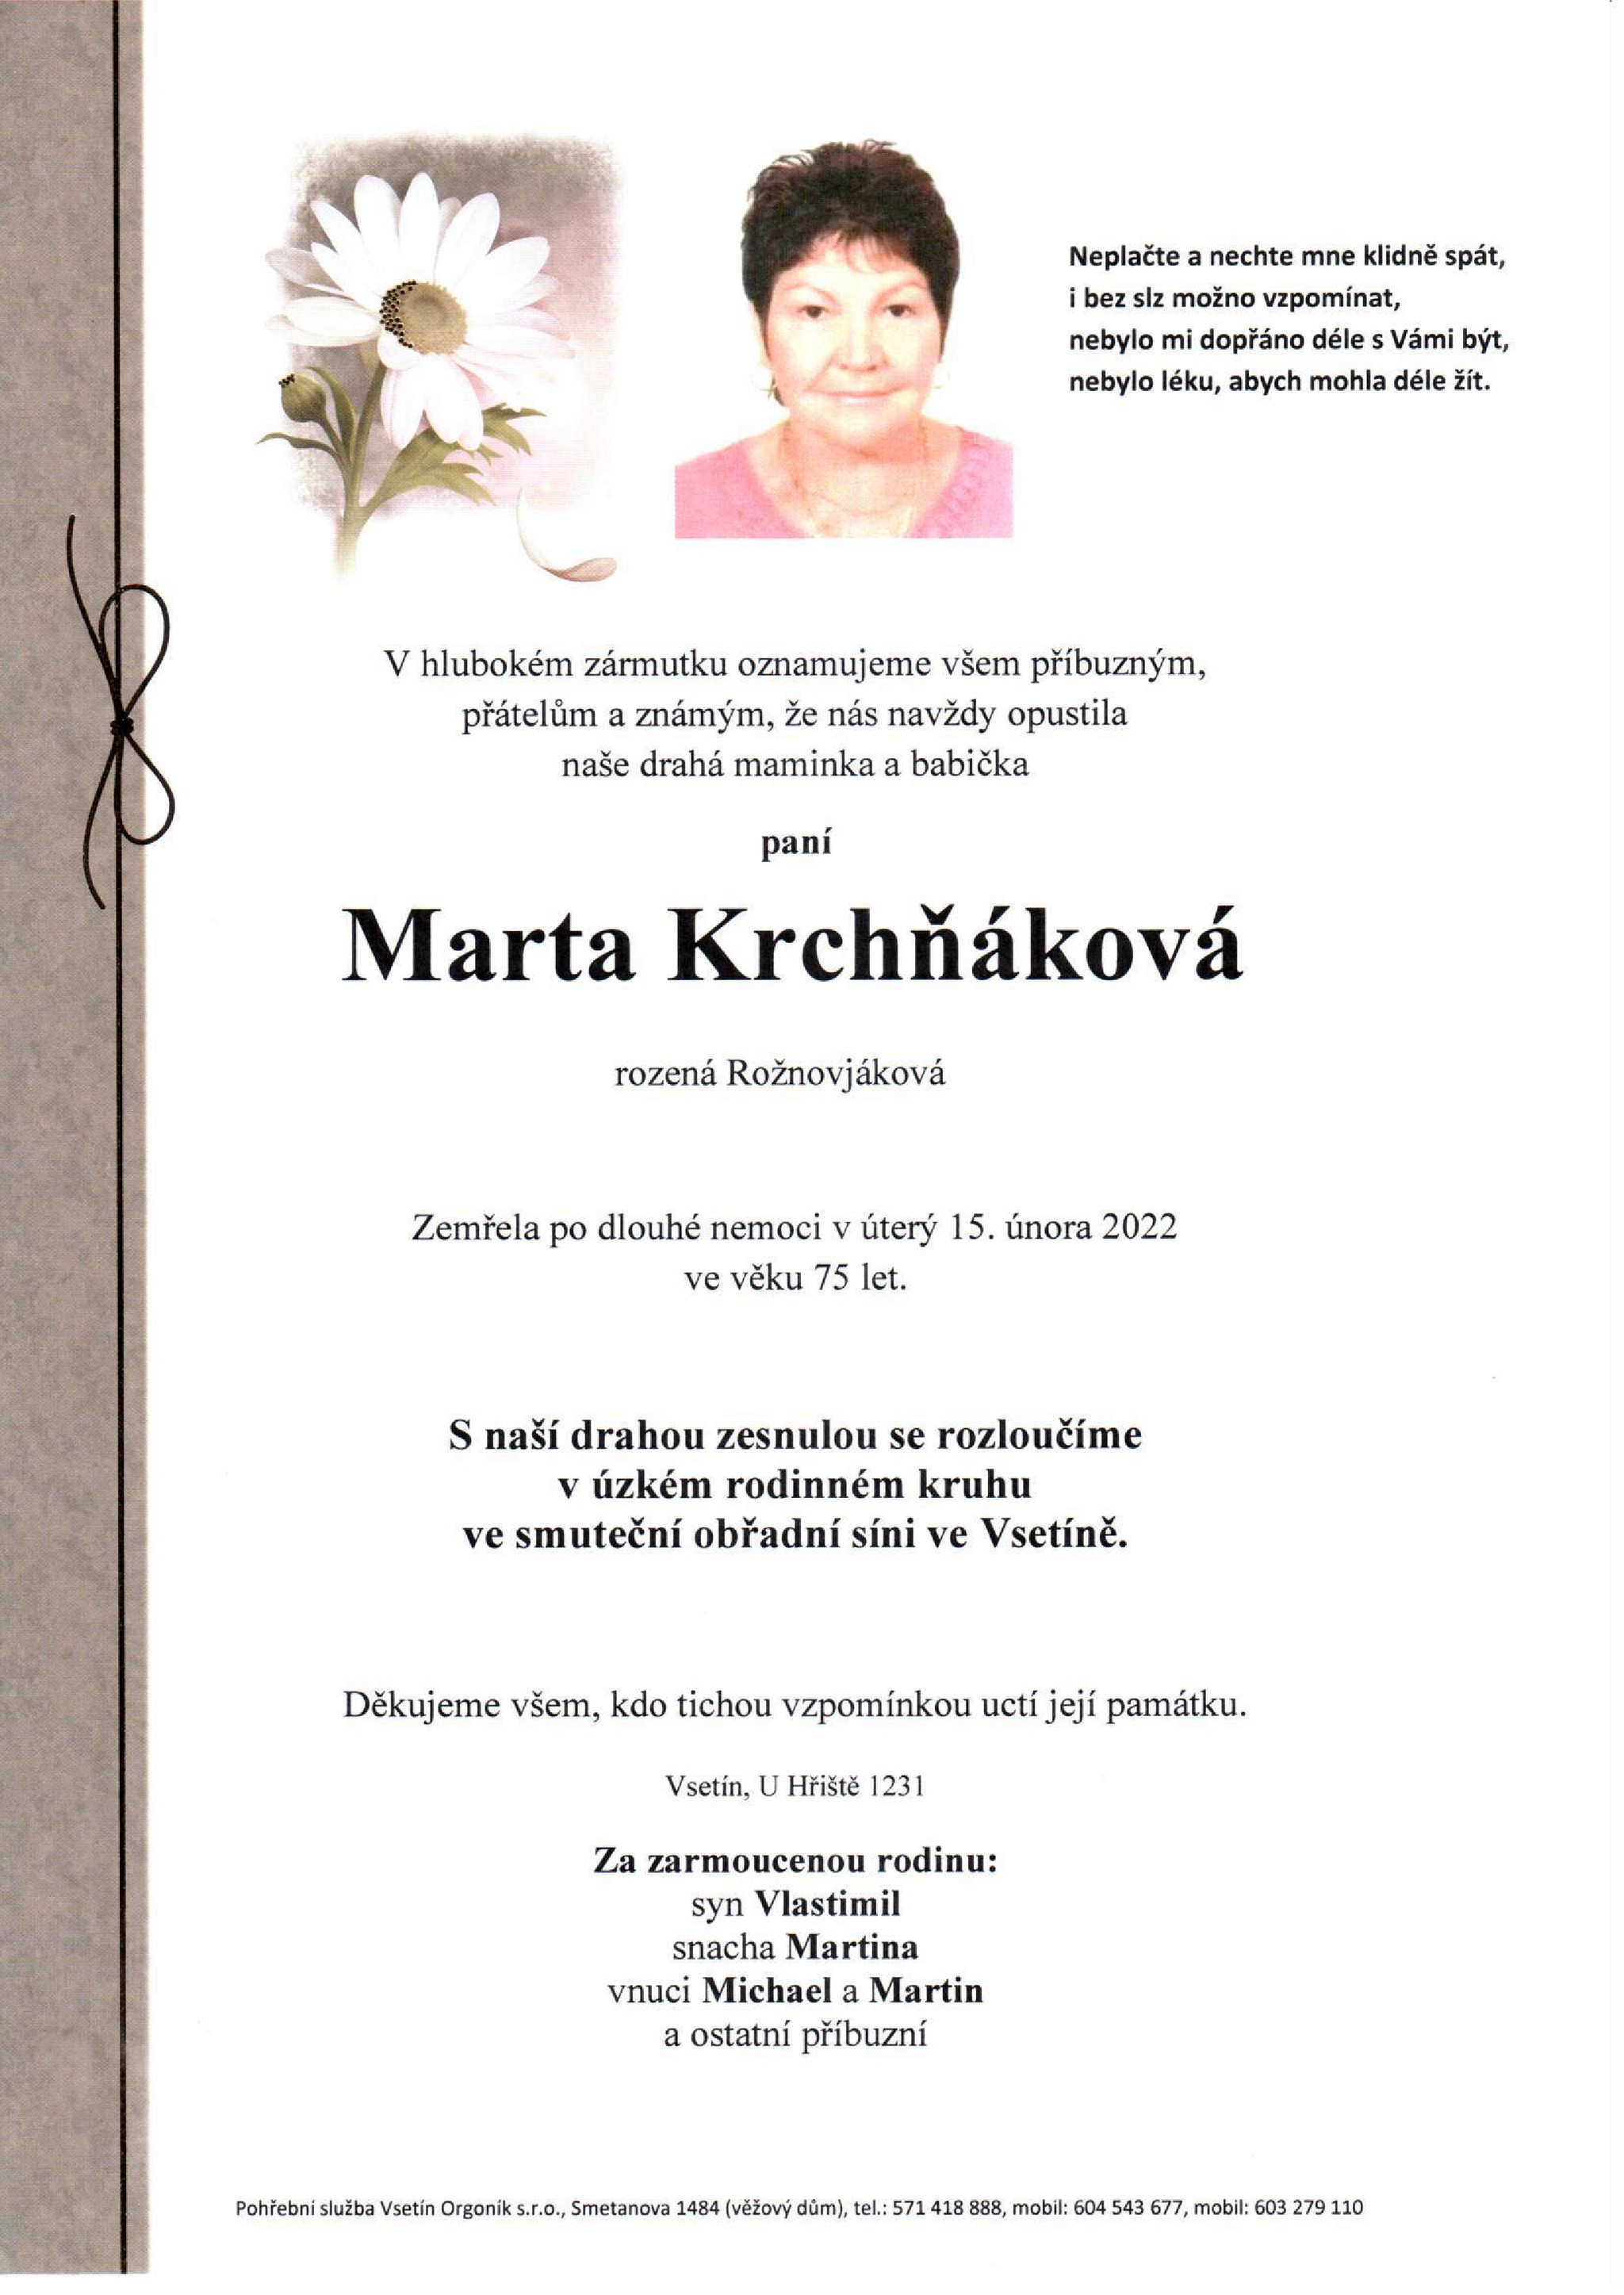 Marta Krchňáková